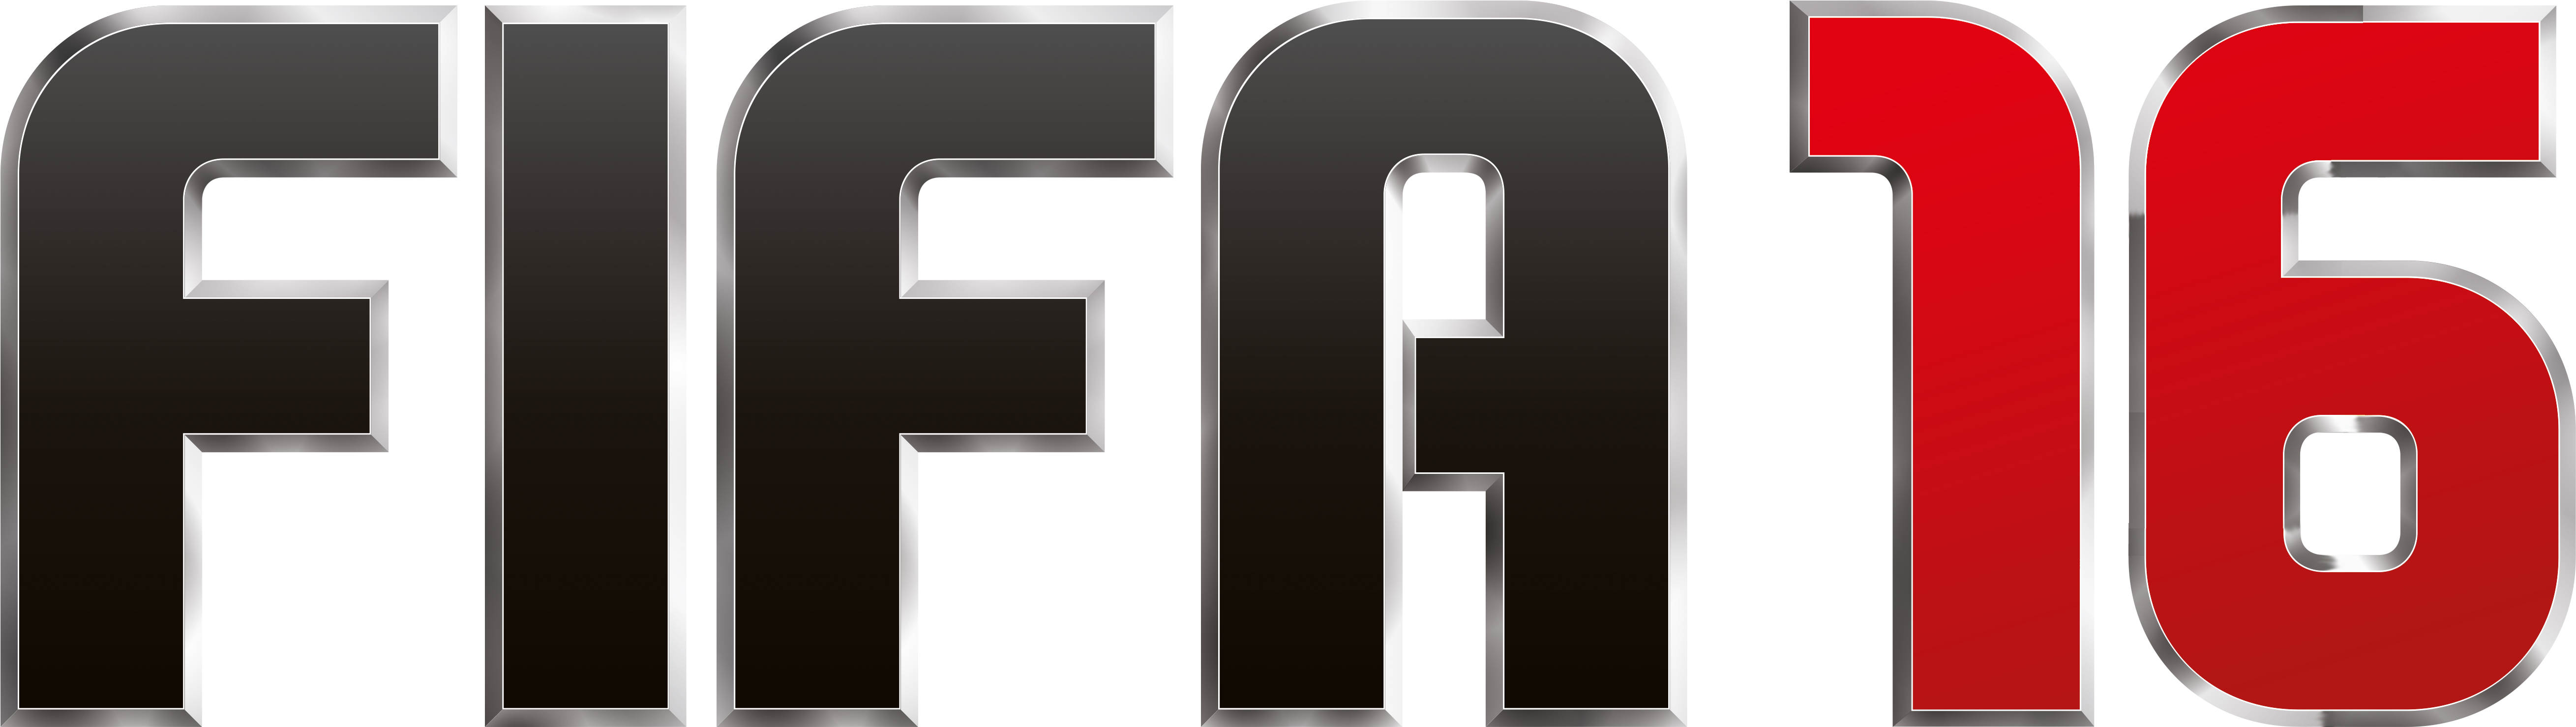 Fifa 16 Logo Transparent - Ea Sports Fifa 16 Logo (5315x1595), Png Download